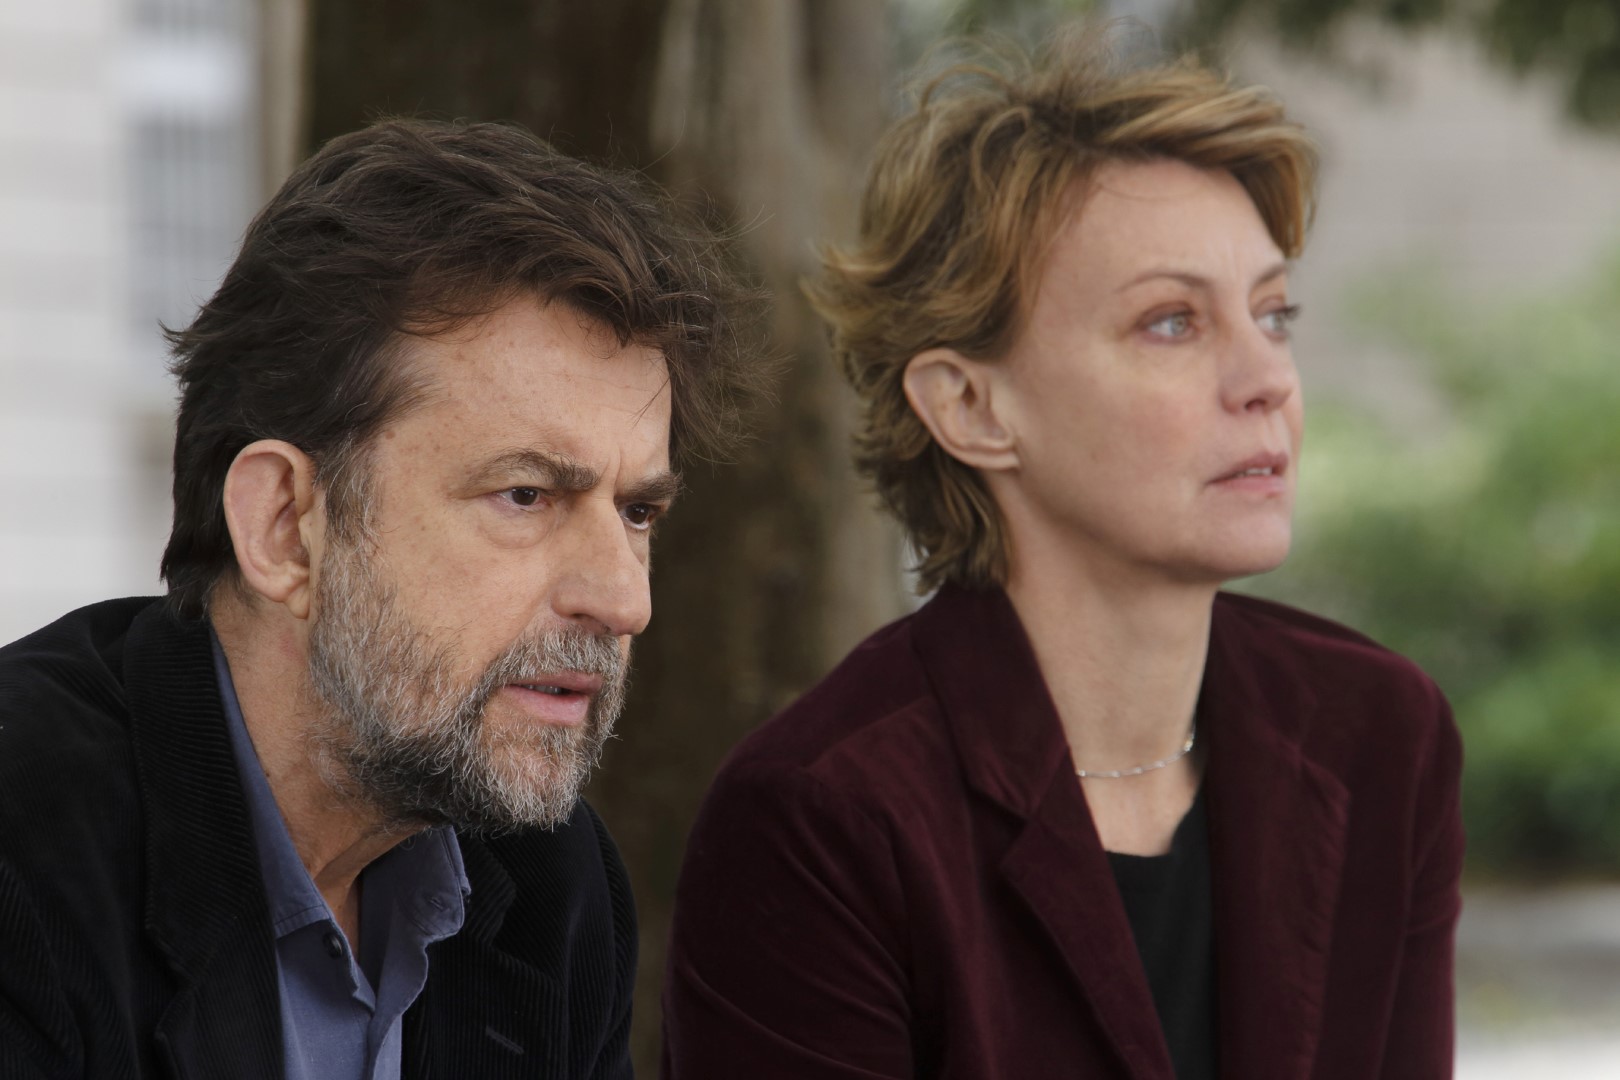 獲獎無數的義大利名導南尼莫瑞提的《幸福不喊卡》被法國「電影筆記」評選為2015世界十大影片第一名.jpg